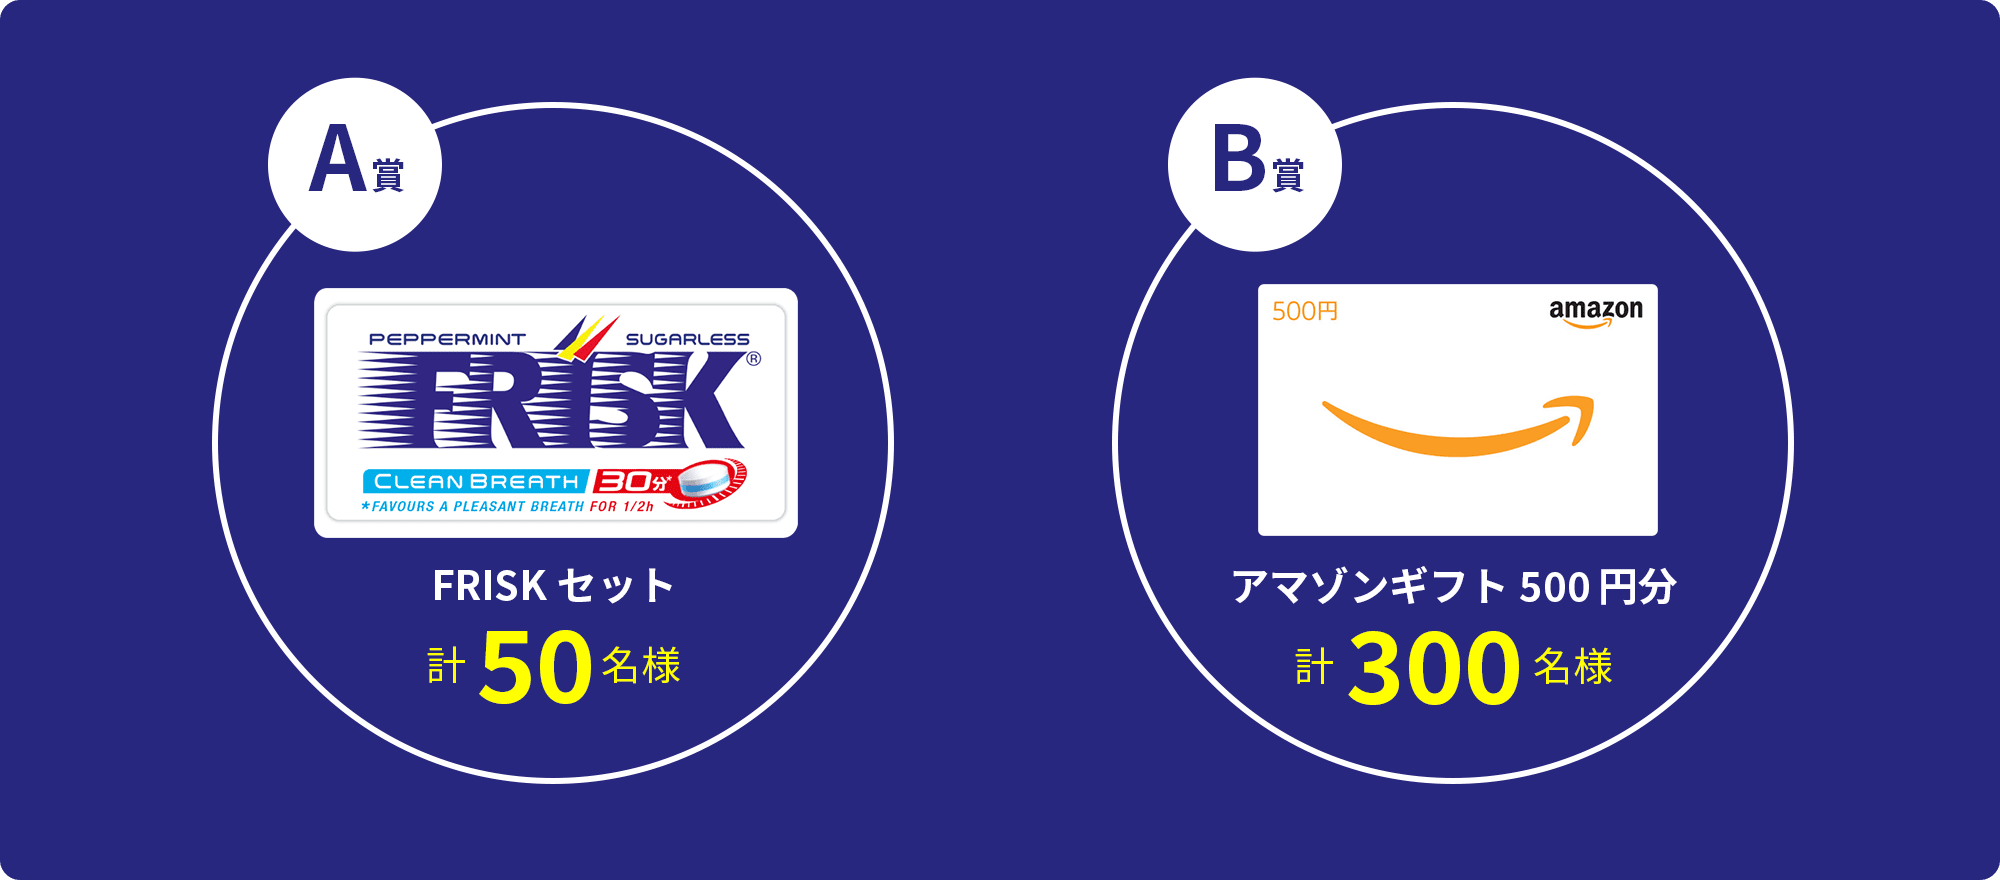 A賞 FRISKセット計50名様　B賞 アマゾンギフト500円分​ 計300名様